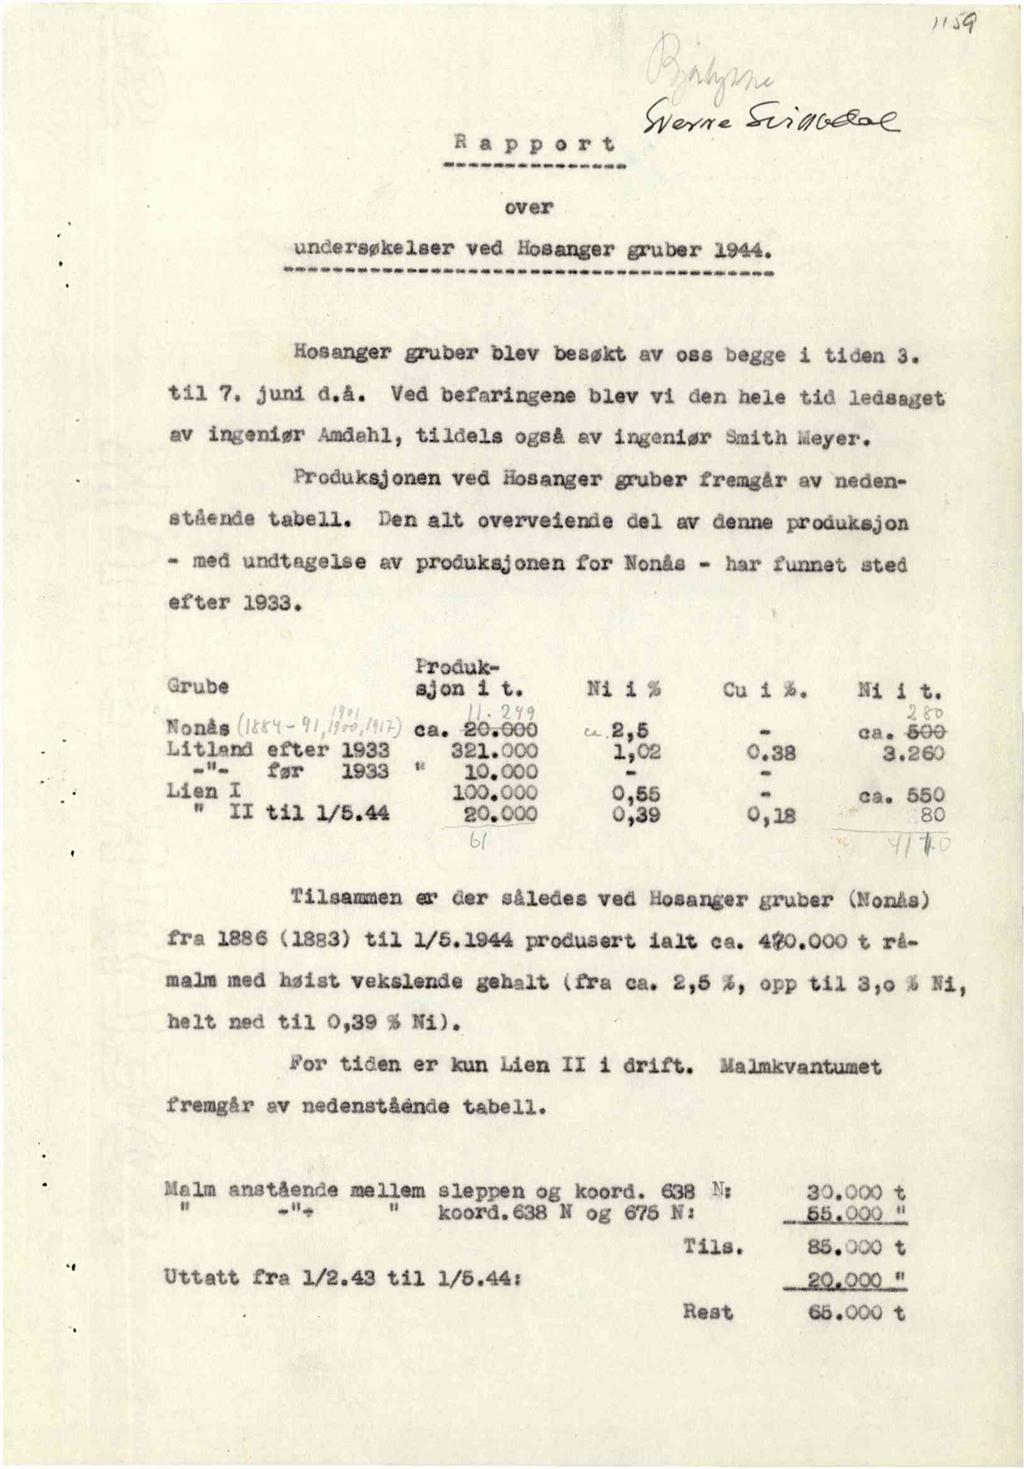 Rapport ;rey;+'- e ST-2;1 06.06, -2: over undersøkelserved Hosangergruber1944. Hosengergruberblev beaøktav oaa beggei tidan3. til 7. jund d.å.